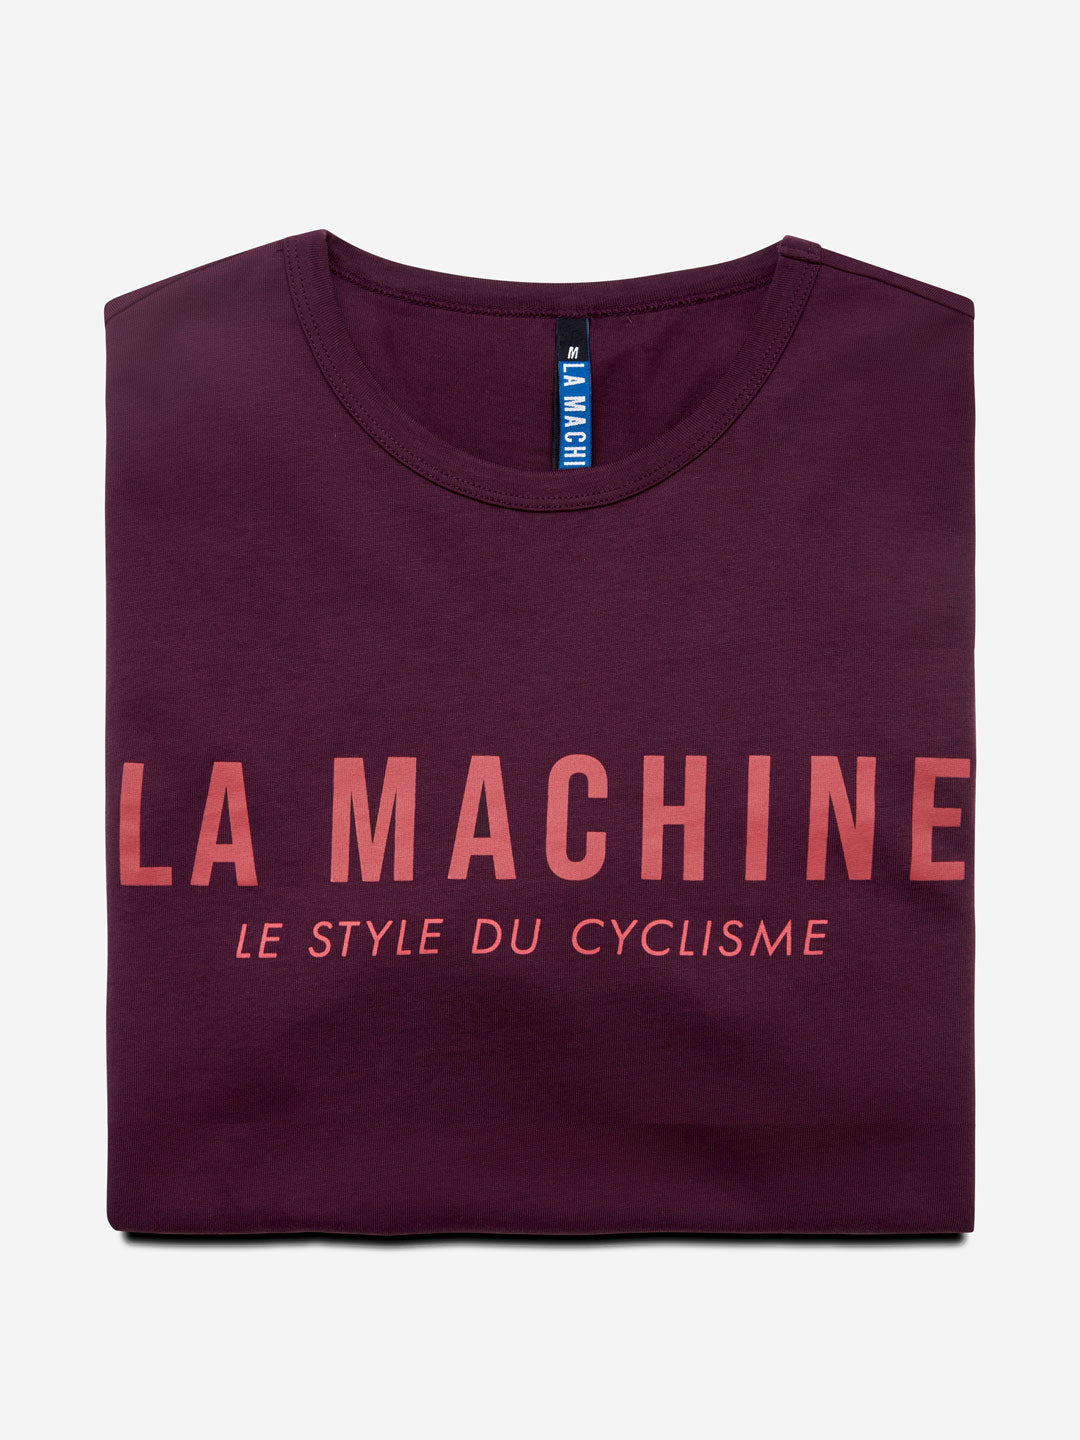 La Machine Logo - T-shirt